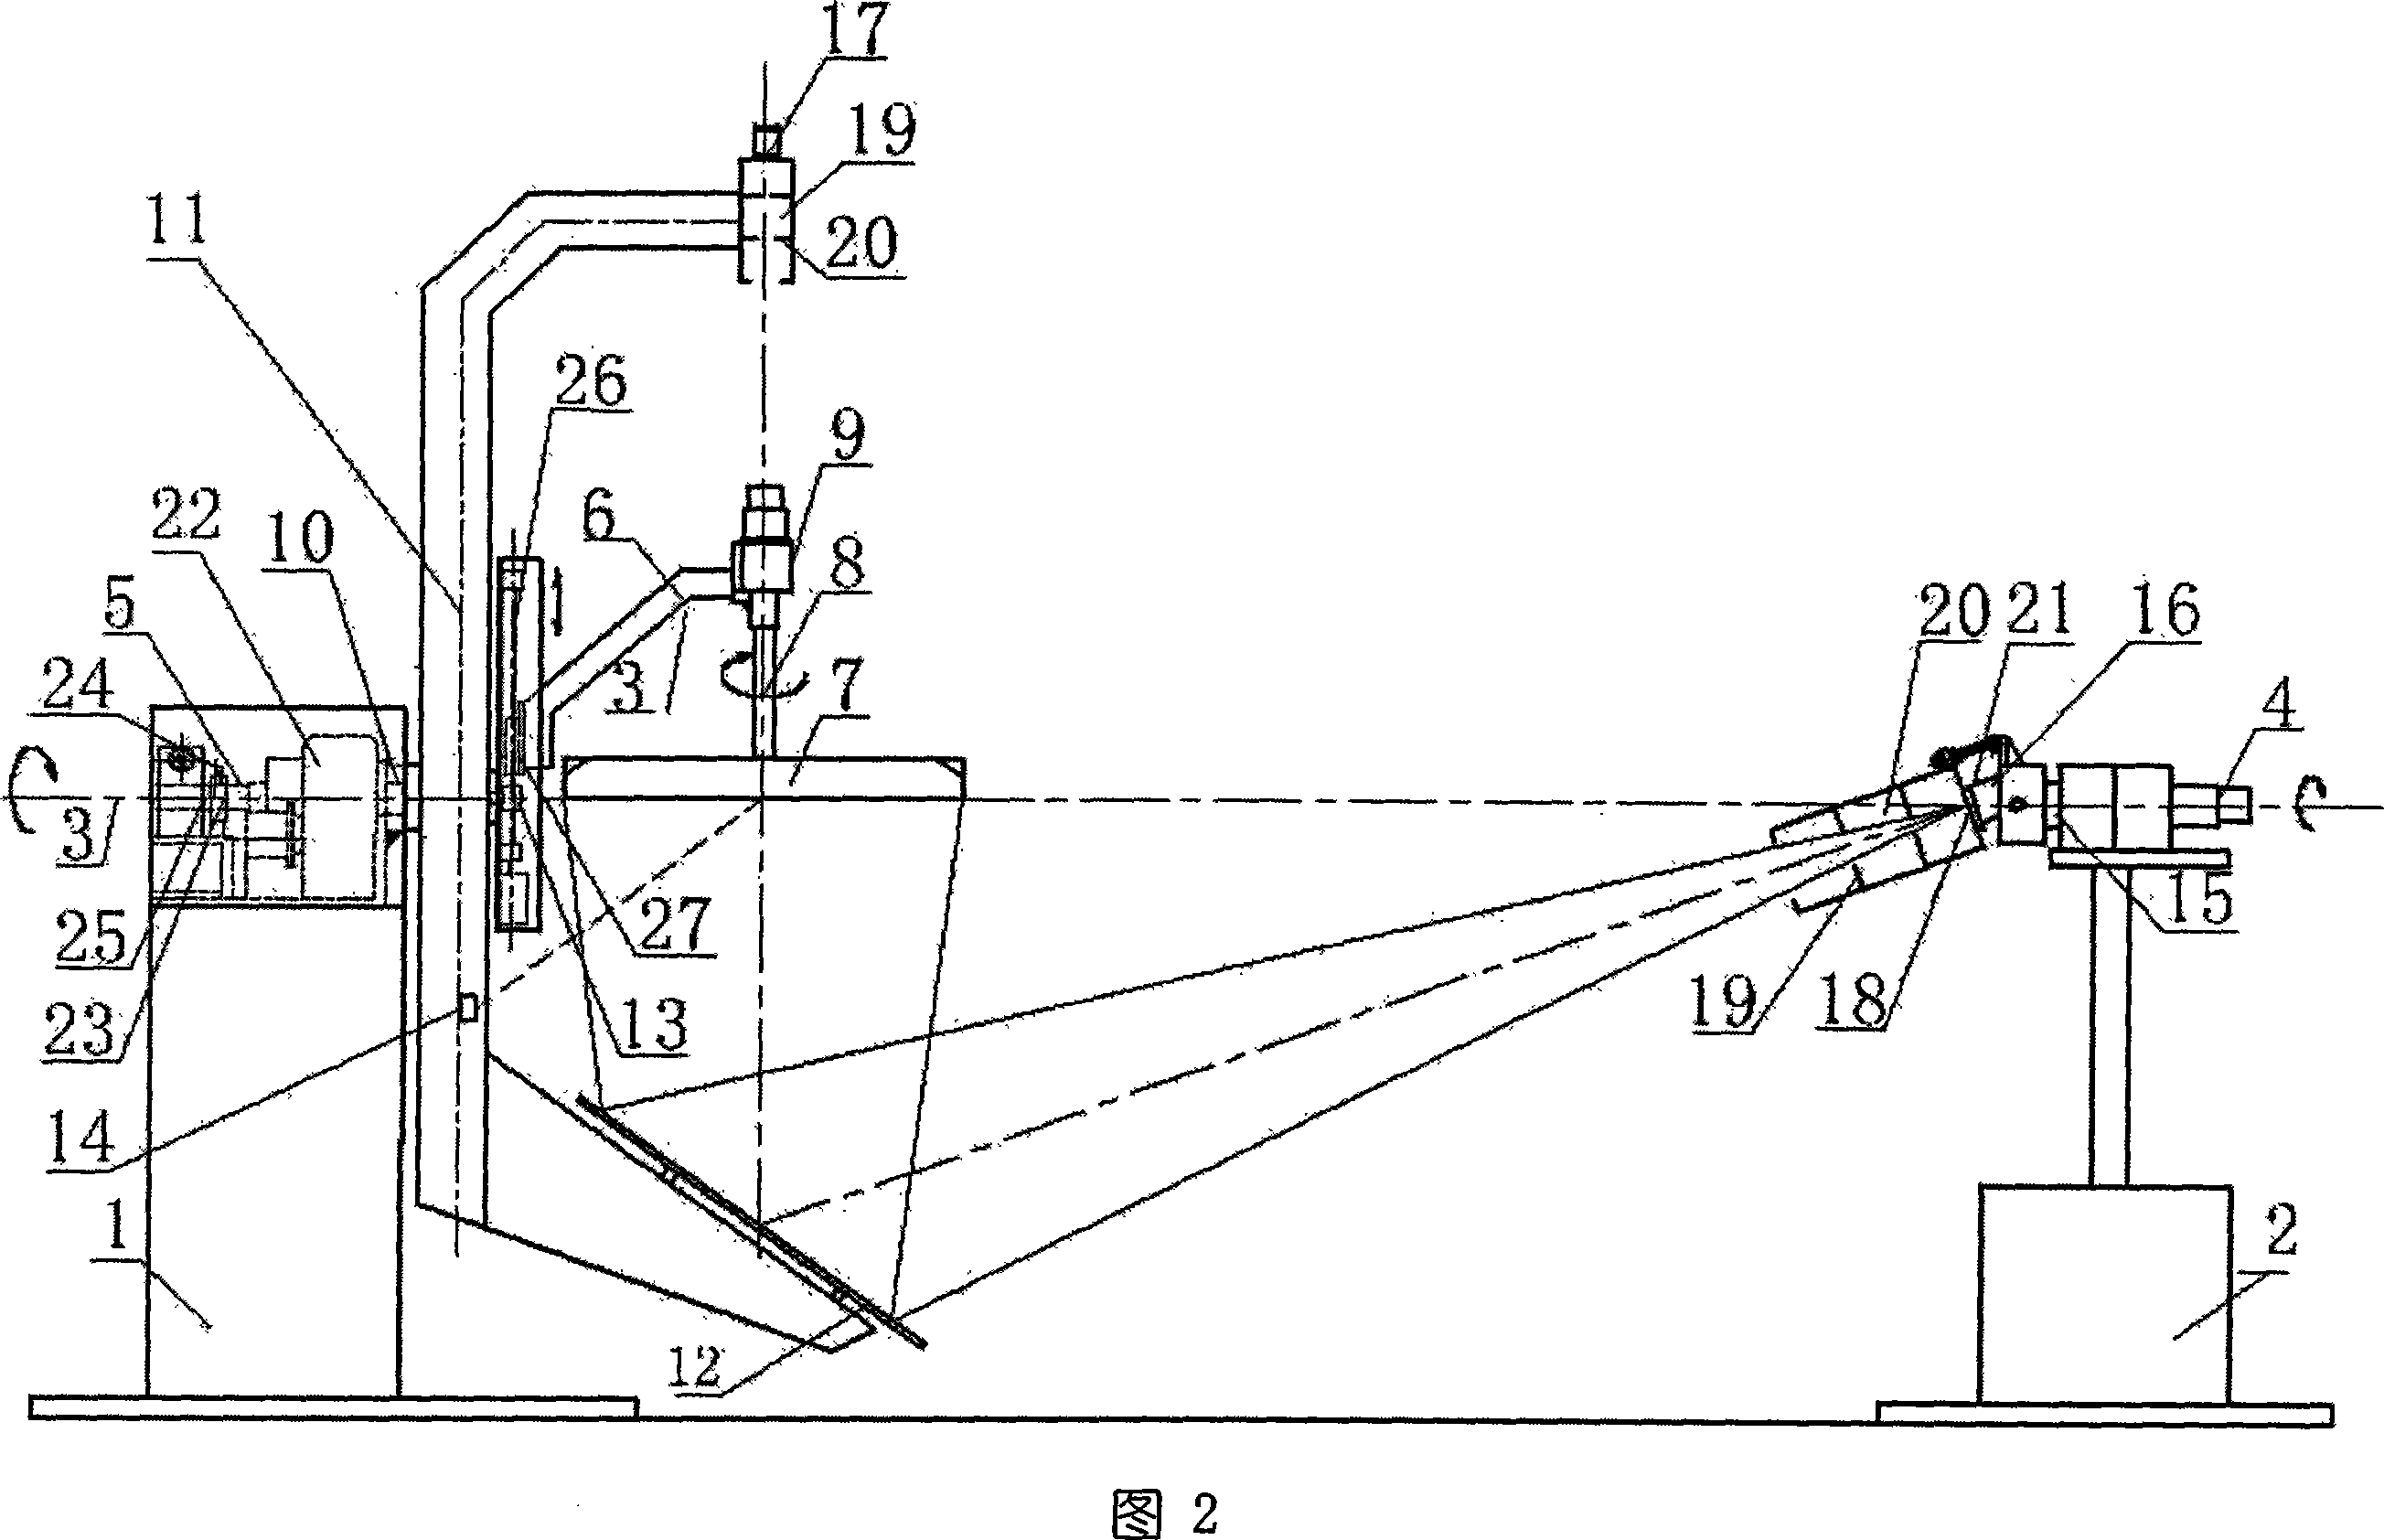 Distribution photometer